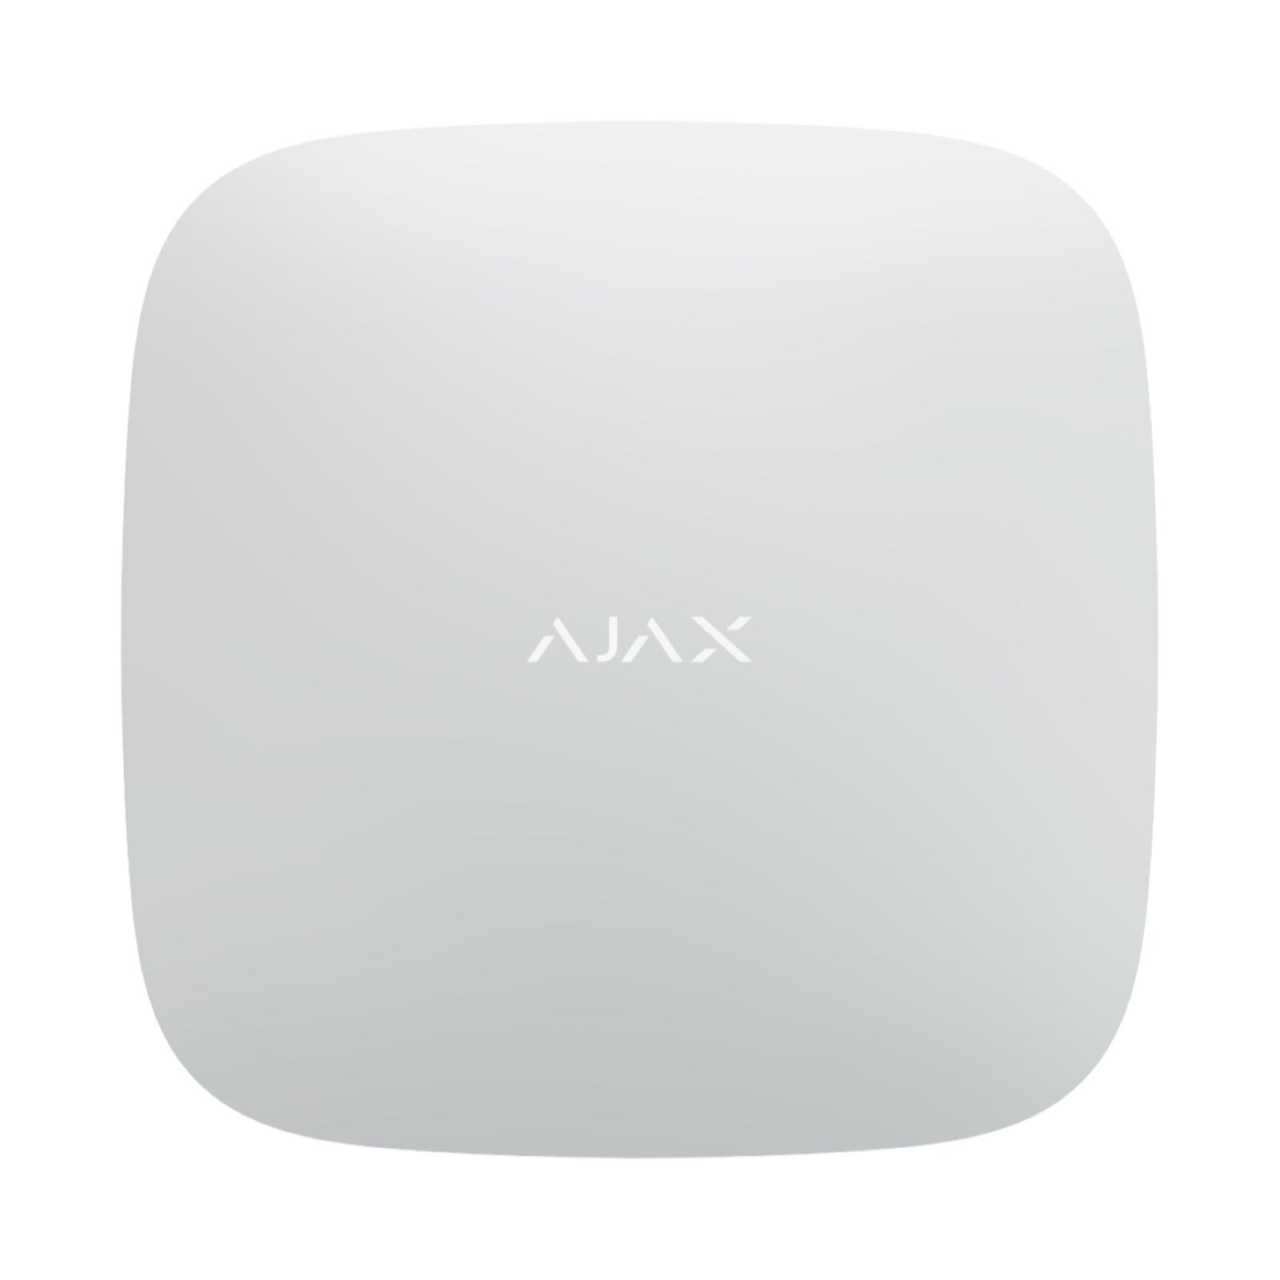 AJAX Alarmzentrale Hub 2 2G Jeweller GSM LAN GPRS APP Steuerung Weiss von Ajax Systems